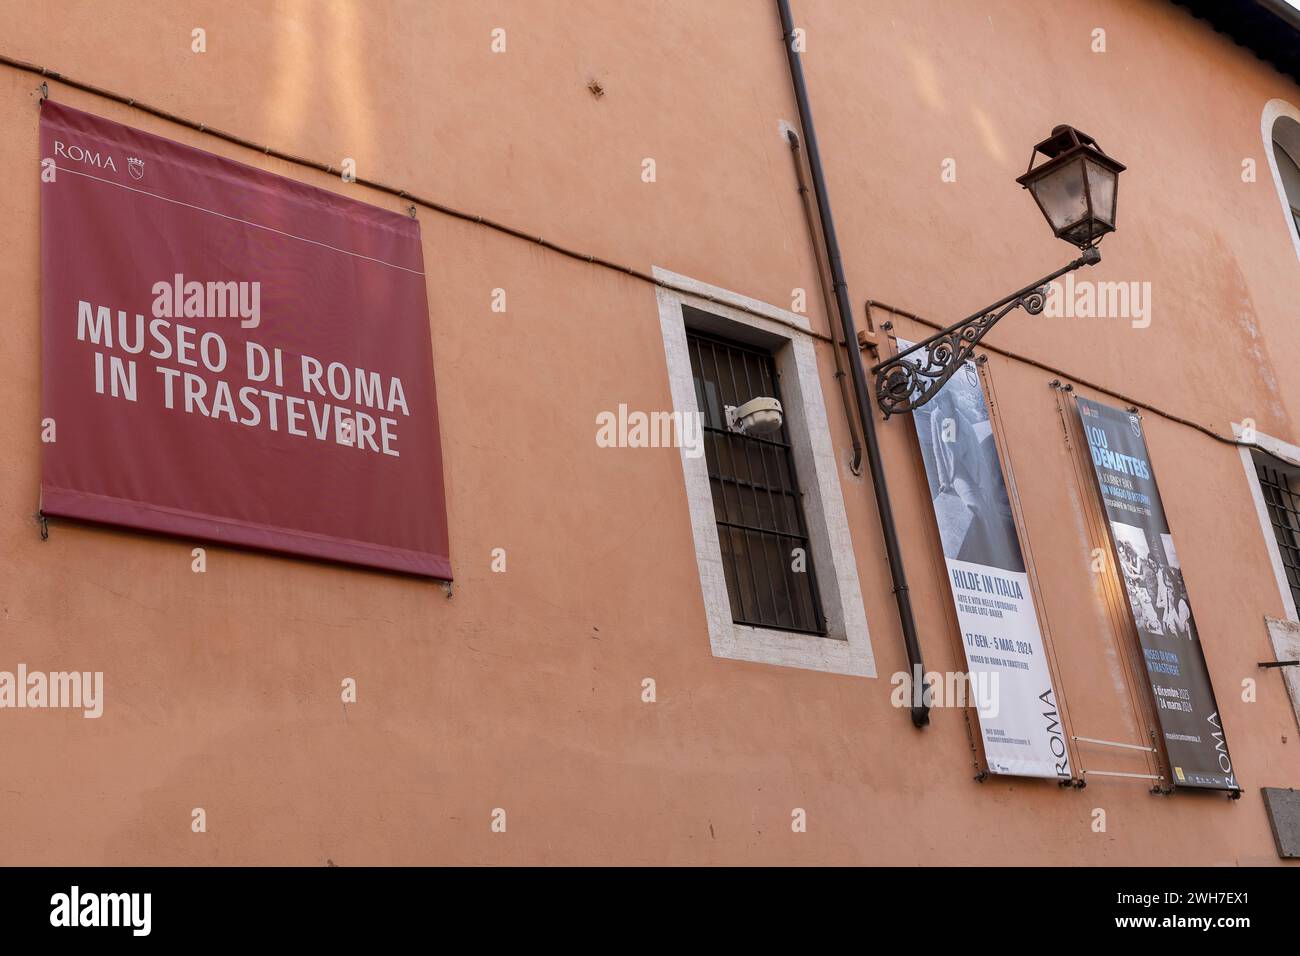 Museum of Rome in Trastevere, Außenansicht, Lampenpfosten, Bannerschilder der laufenden Ausstellungen. Piazza Sant'Egidio, Rom, Italien, Europa, Europäische Union, EU Stockfoto